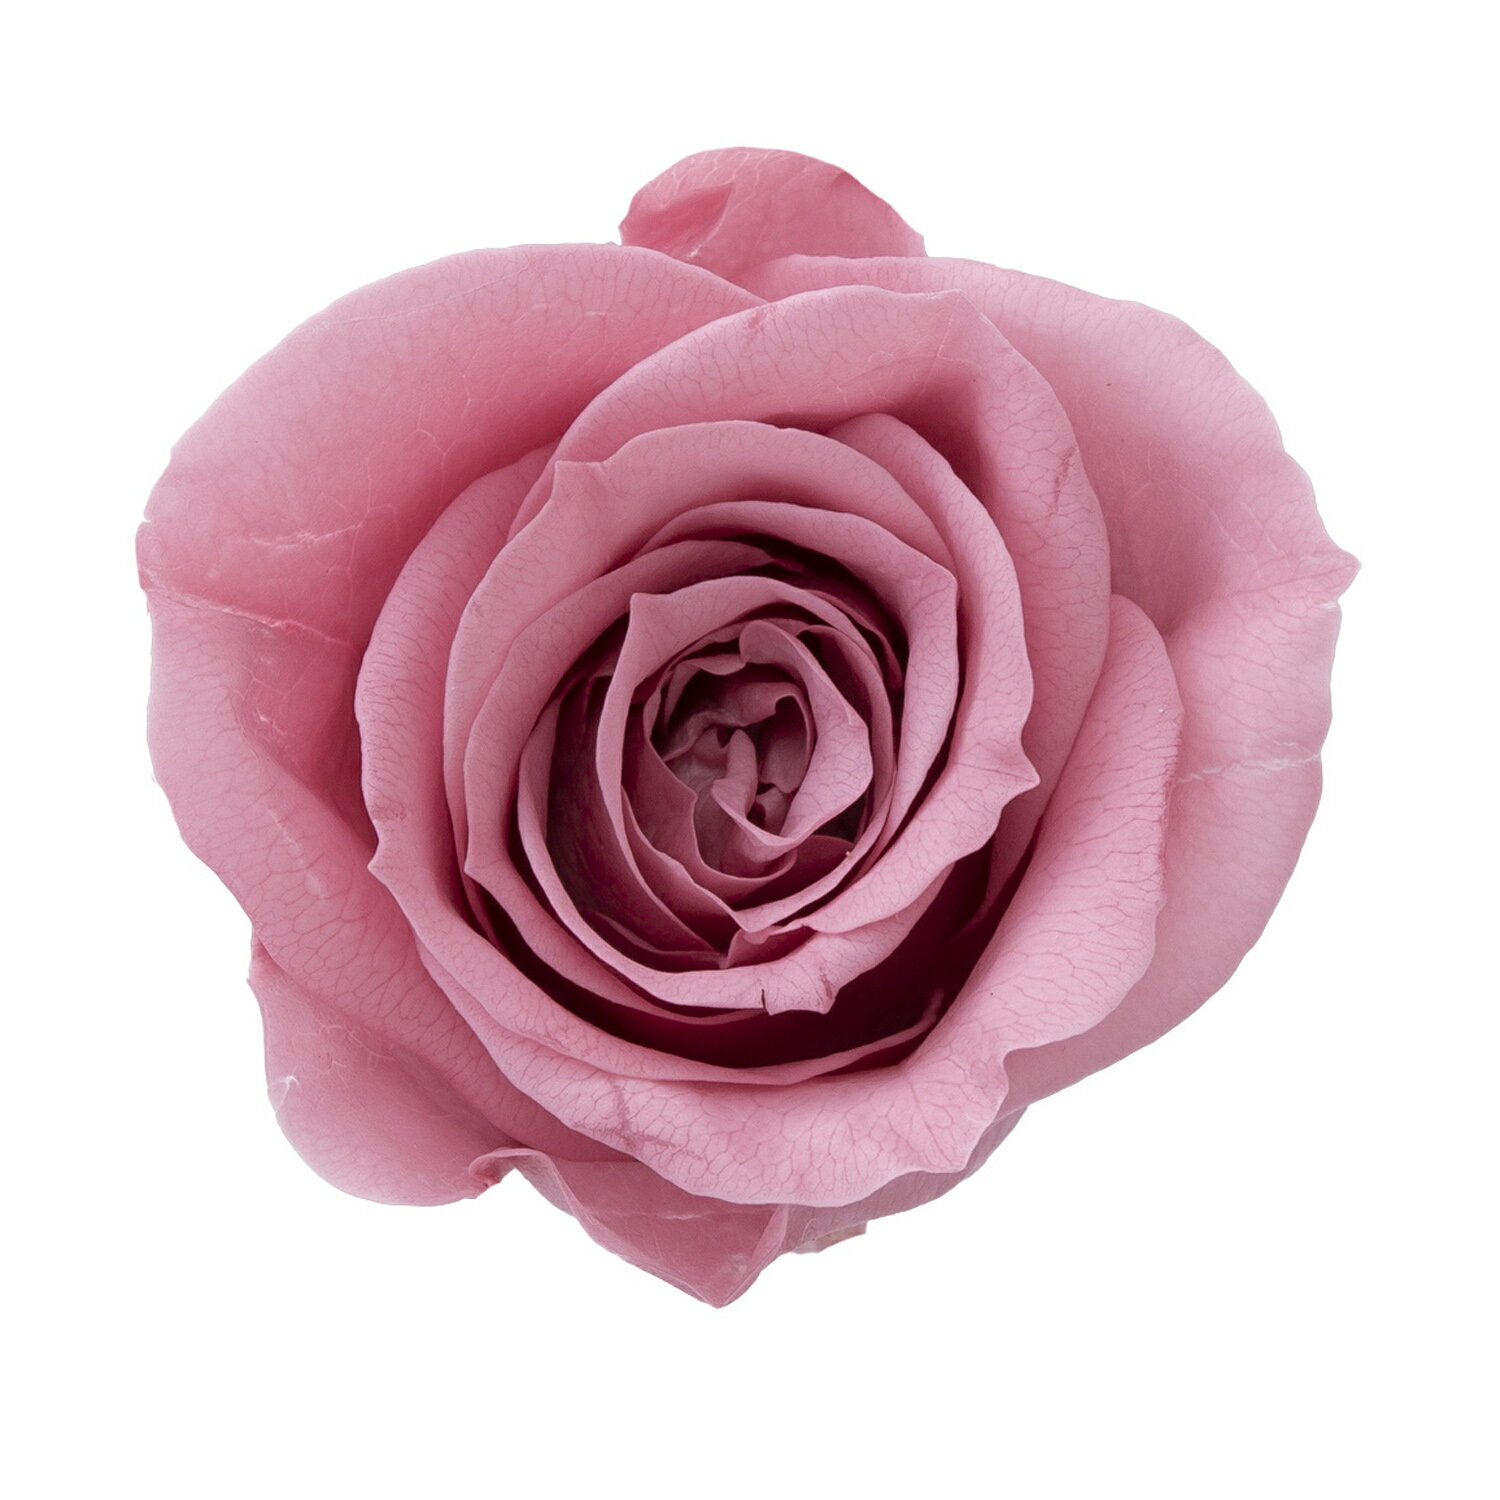 ローズ・いずみ　ラシットピンク 花径:約3.5-4.5cm・花丈:約3-3.5cm/1箱(9輪)